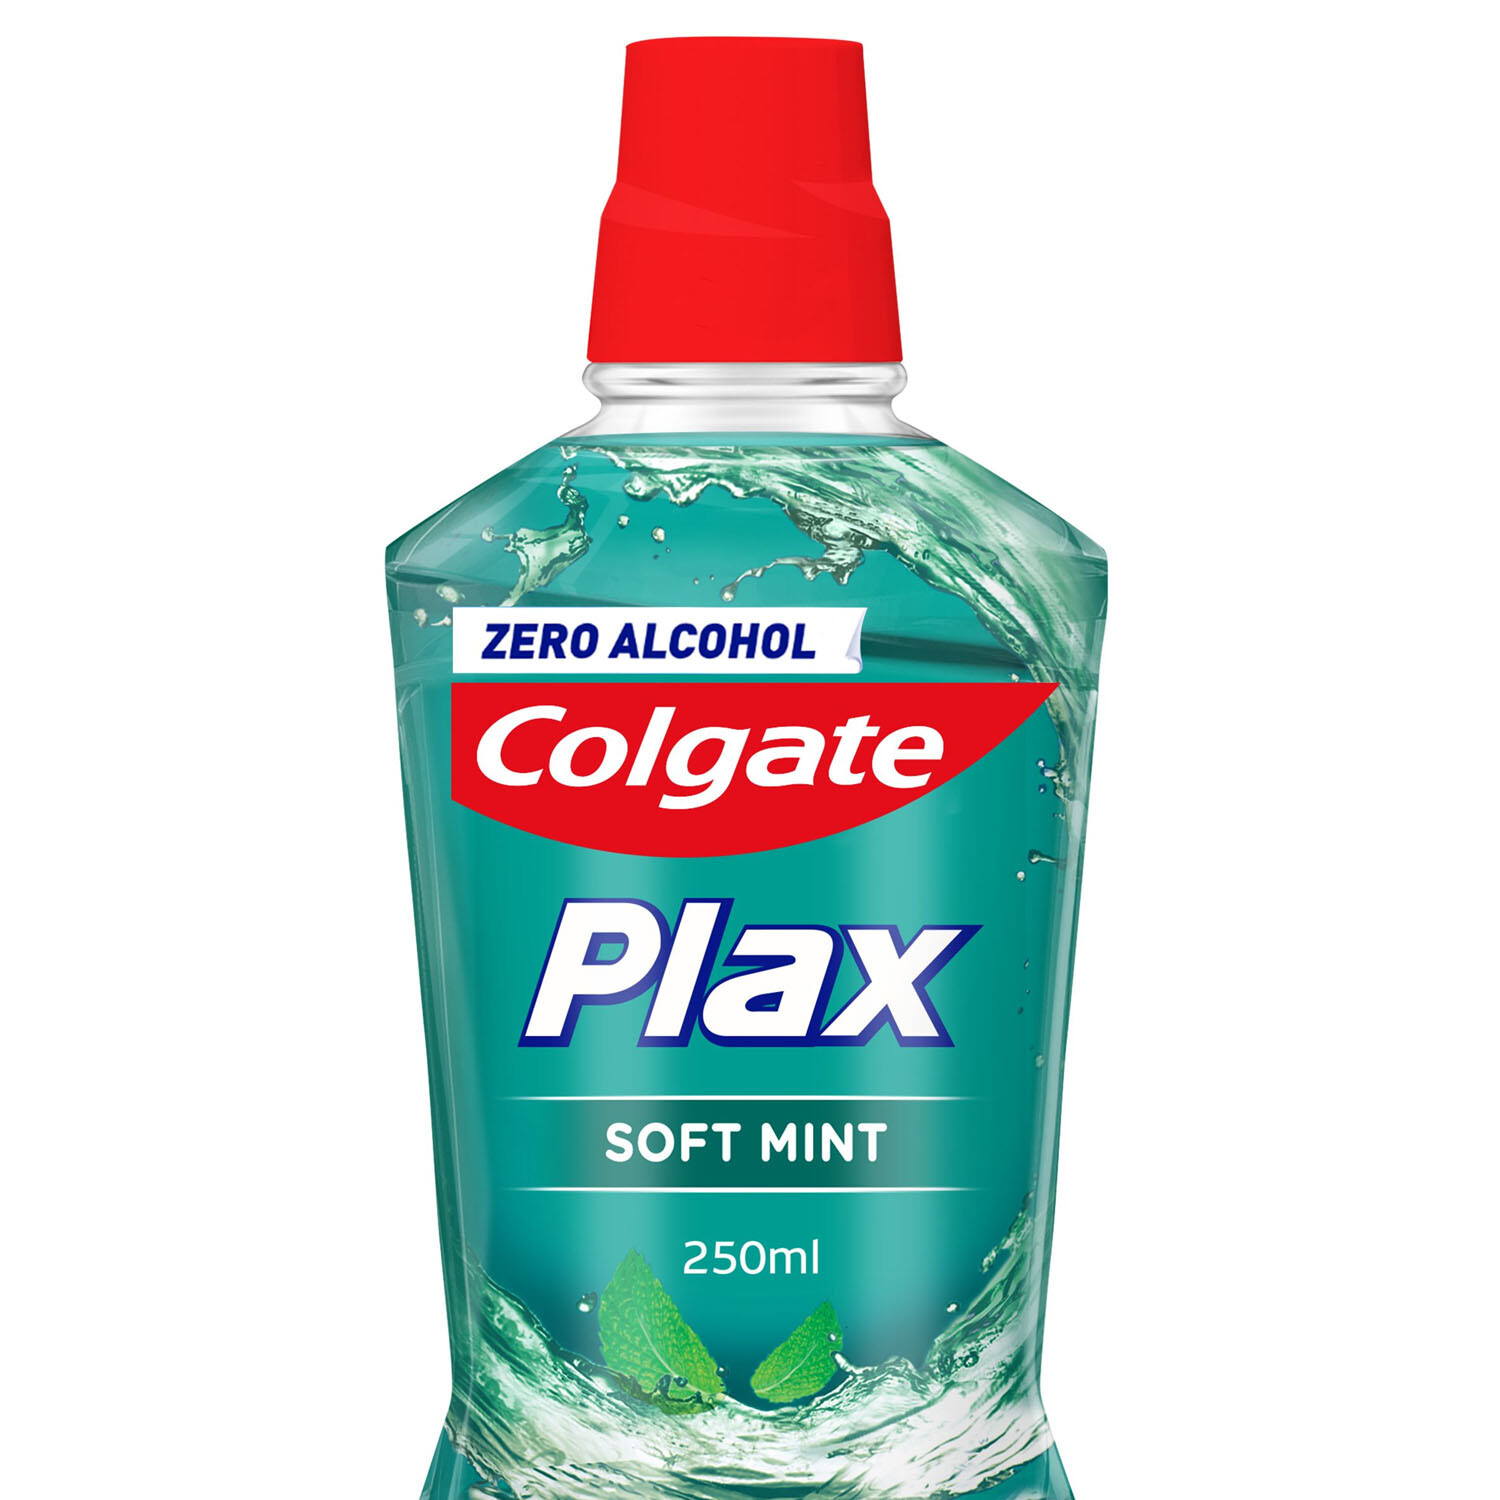 Colgate Plax Soft Mint Mouthwash Image 2